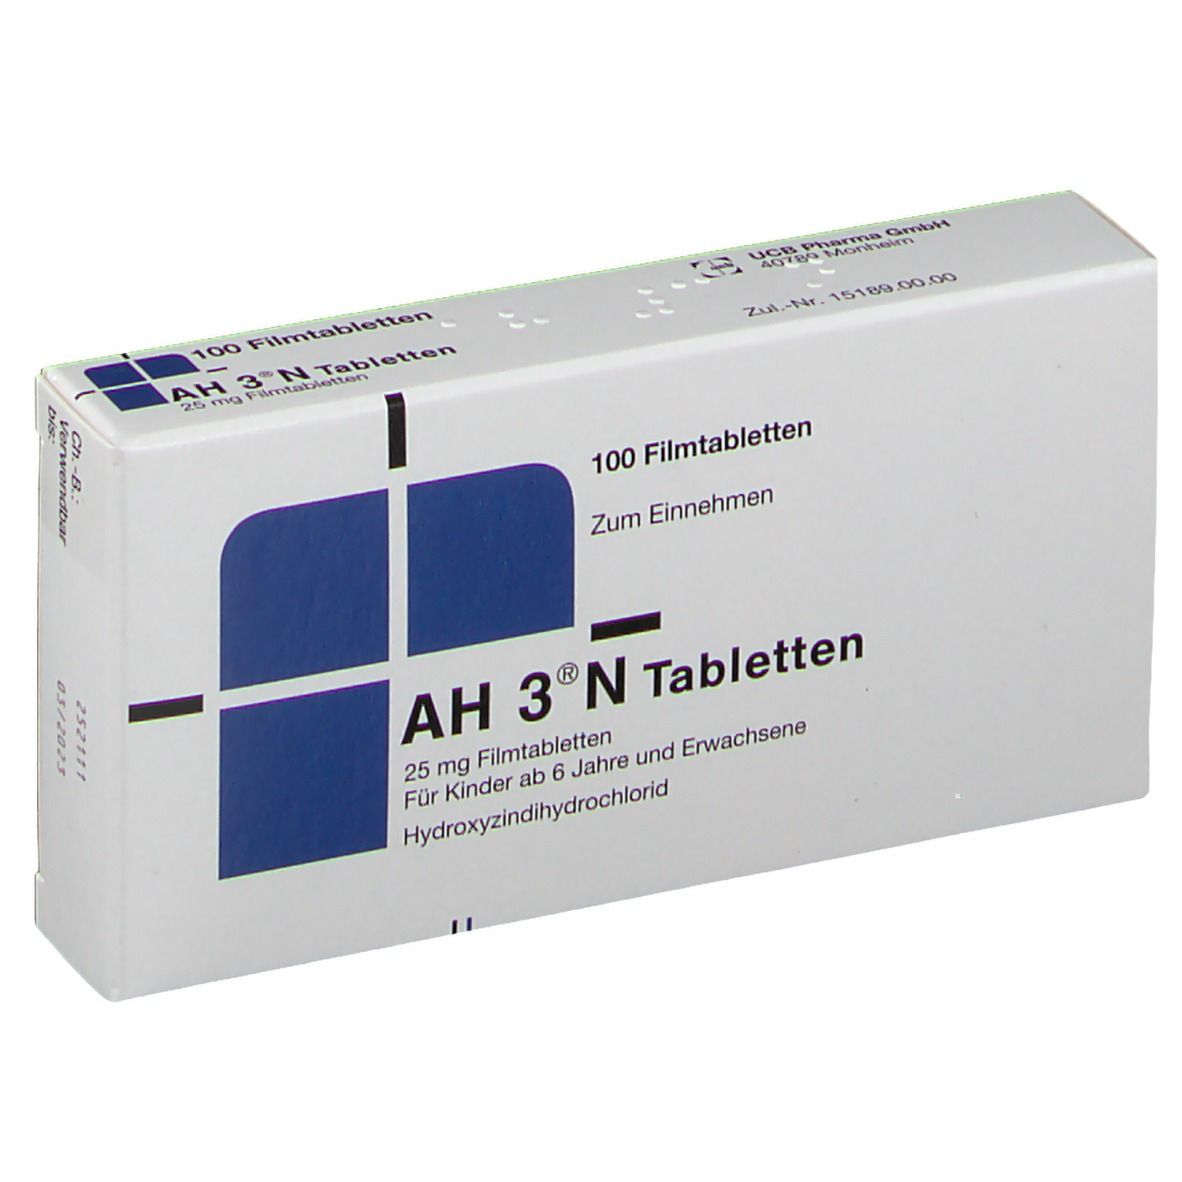 AH 3® N 25 mg